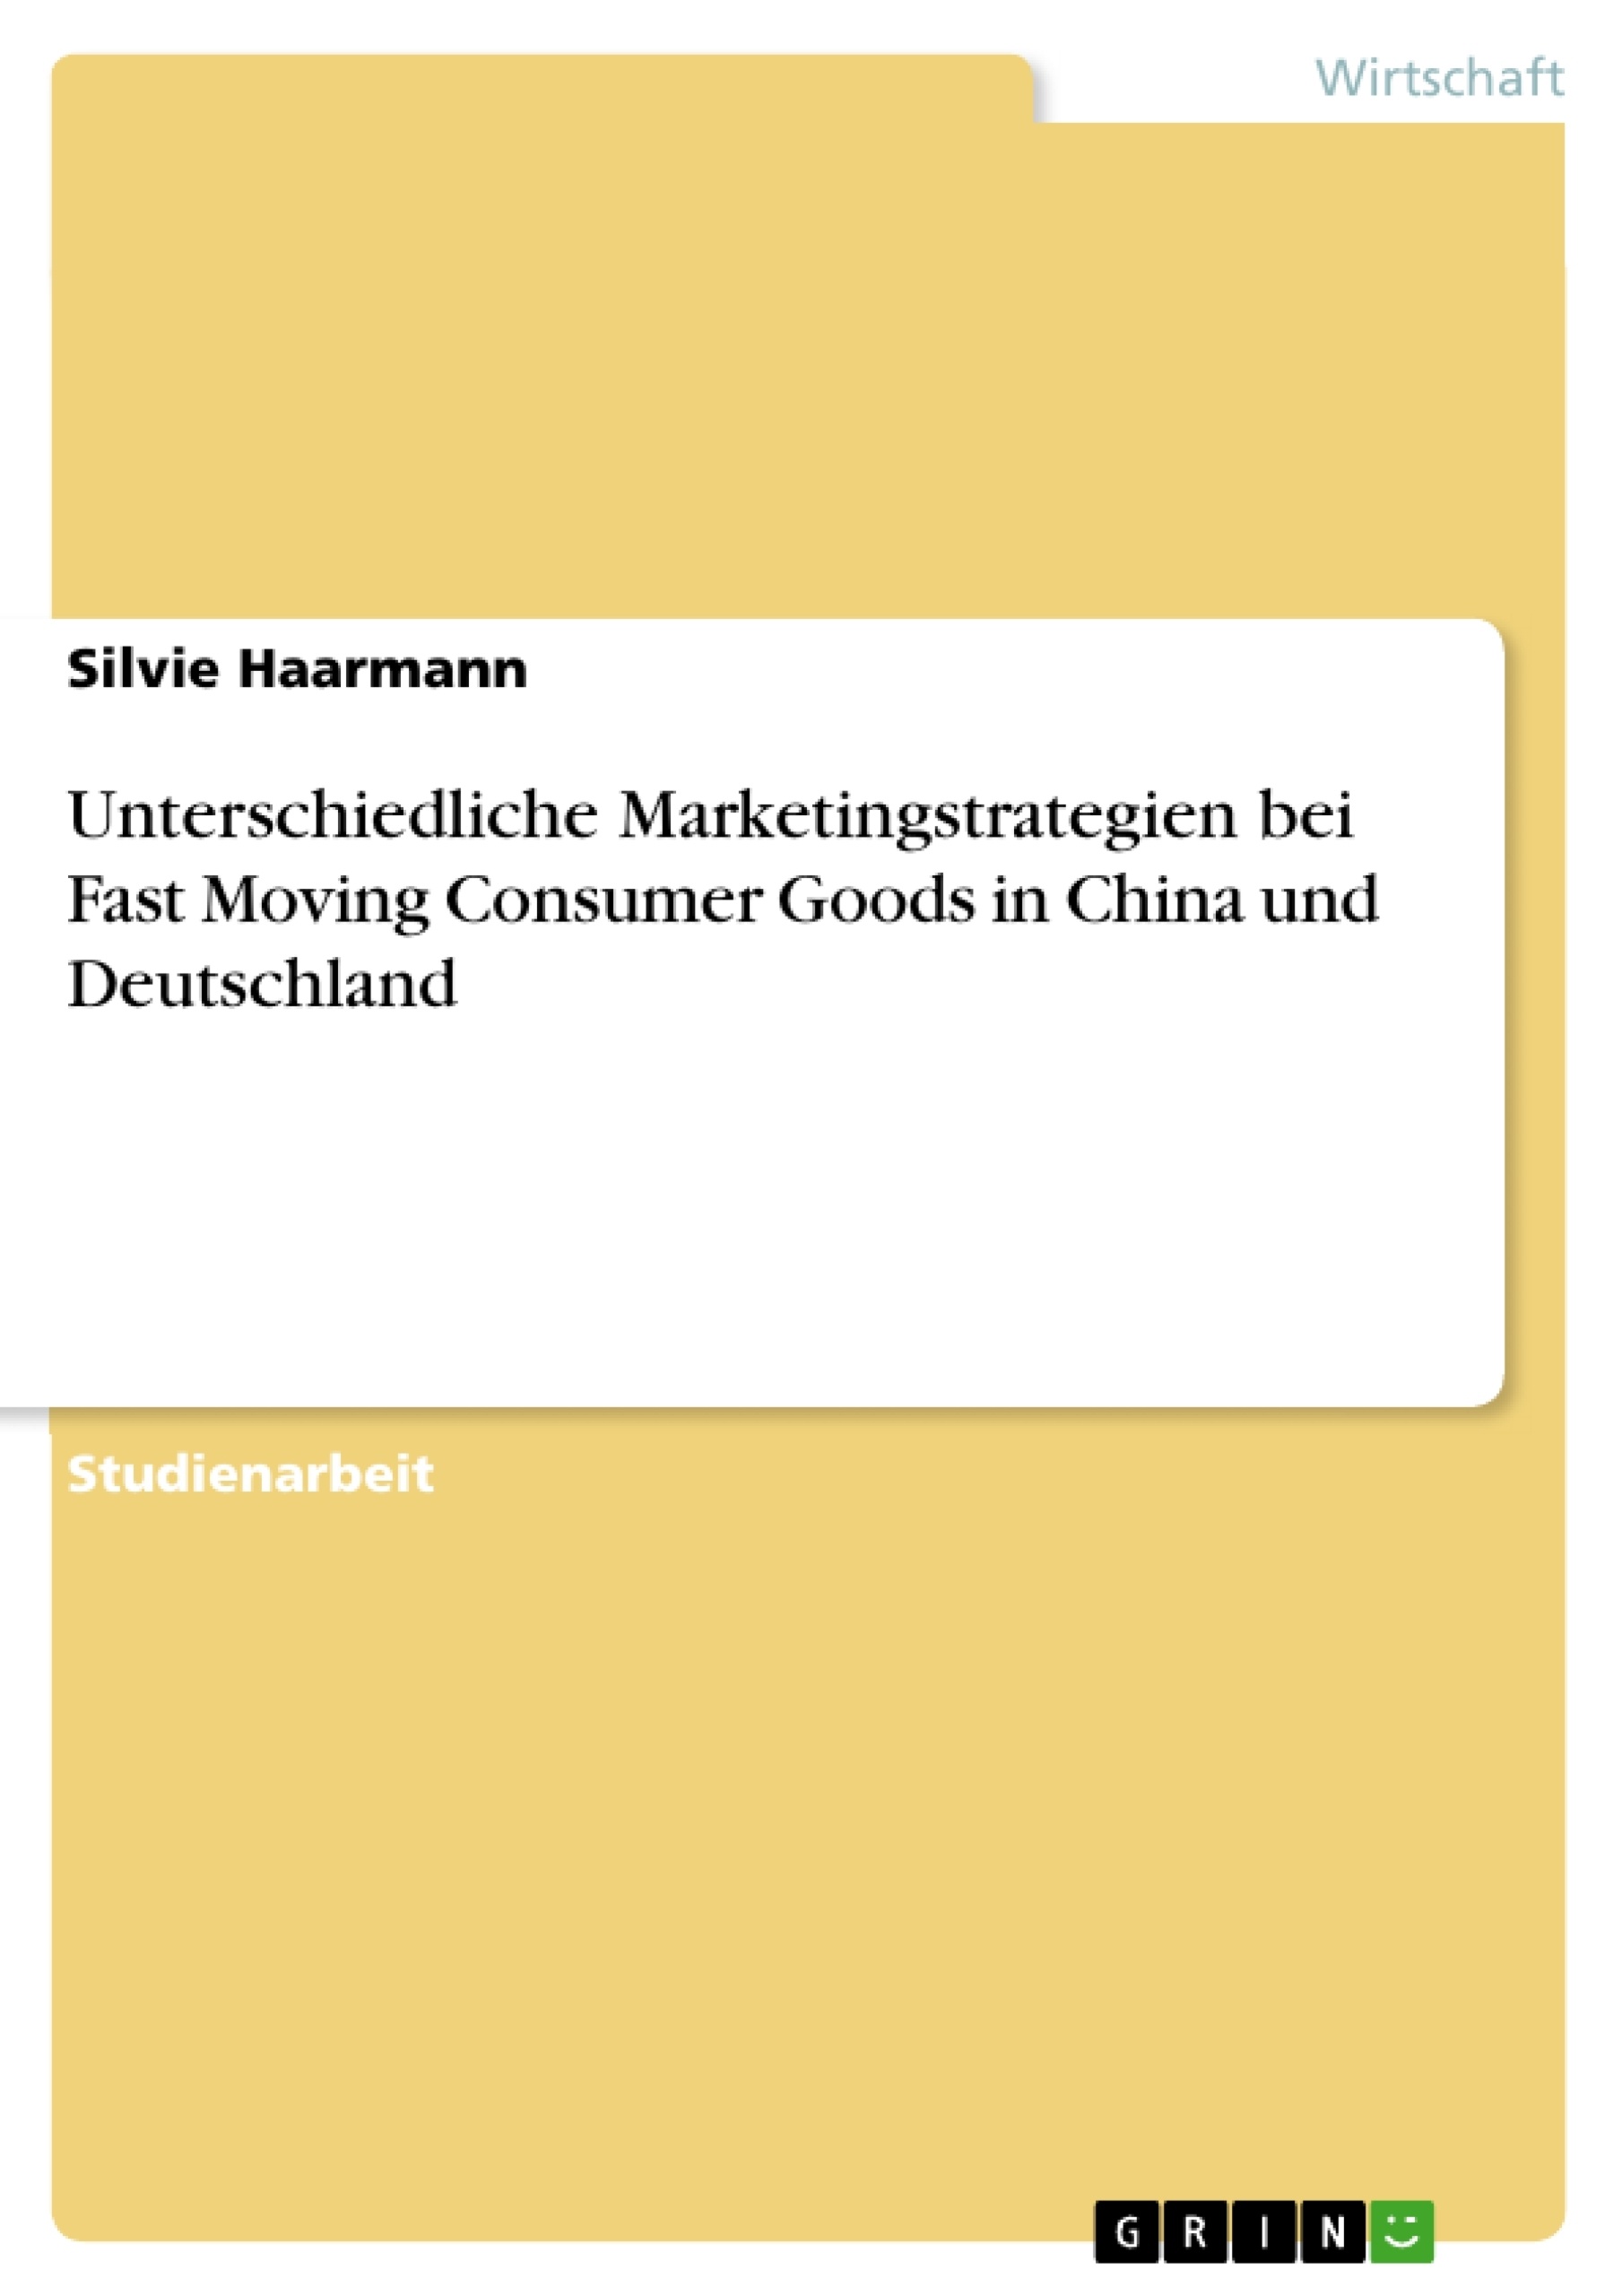 Título: Unterschiedliche Marketingstrategien bei Fast Moving Consumer Goods in China und Deutschland